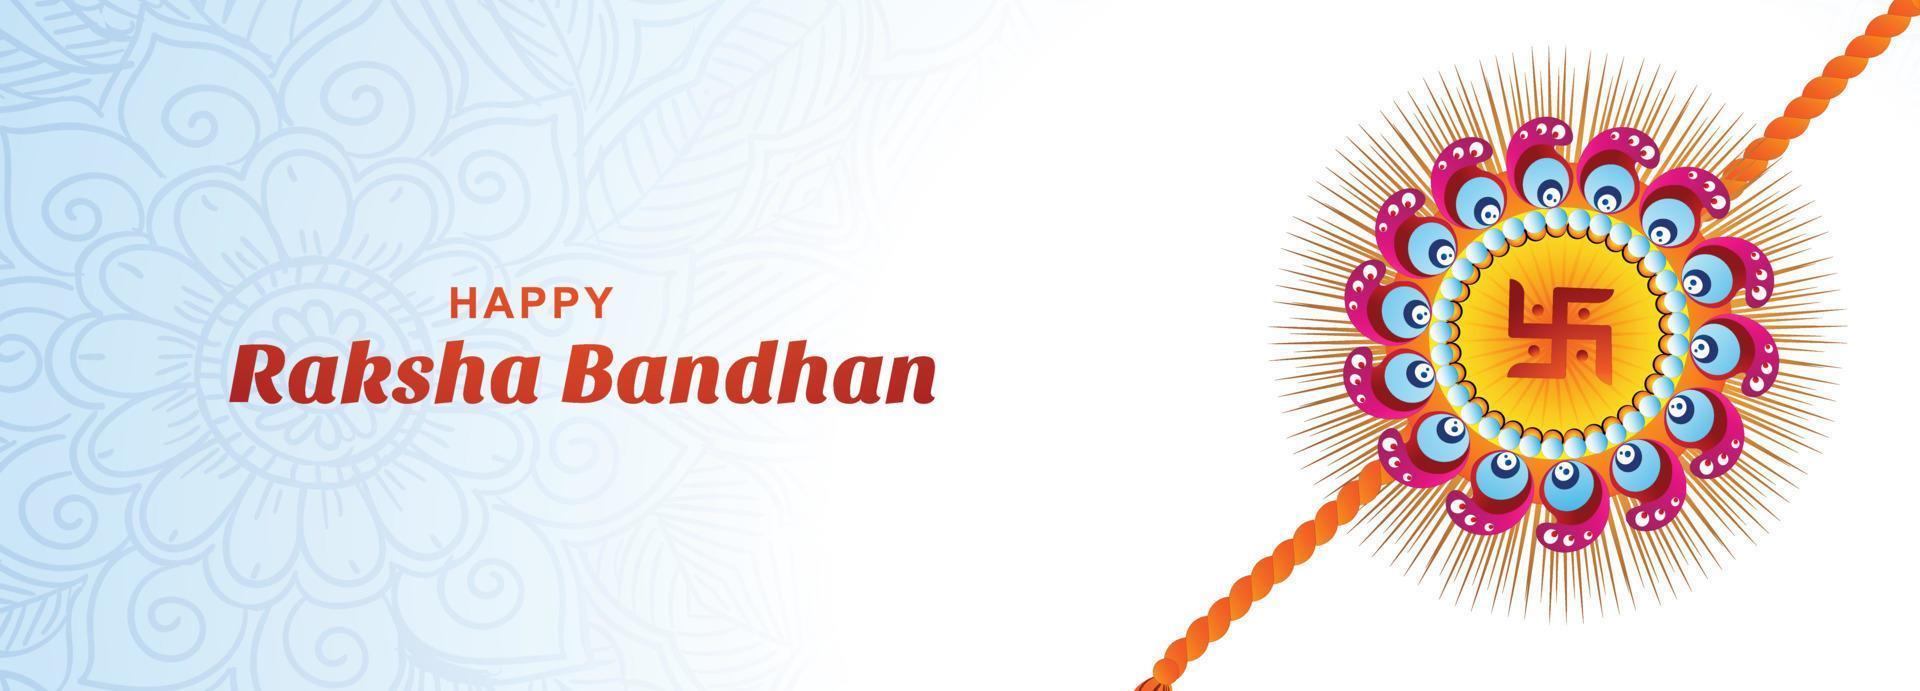 rakhi decorativo para fundo de banner de cartão de celebração raksha bandhan feliz vetor